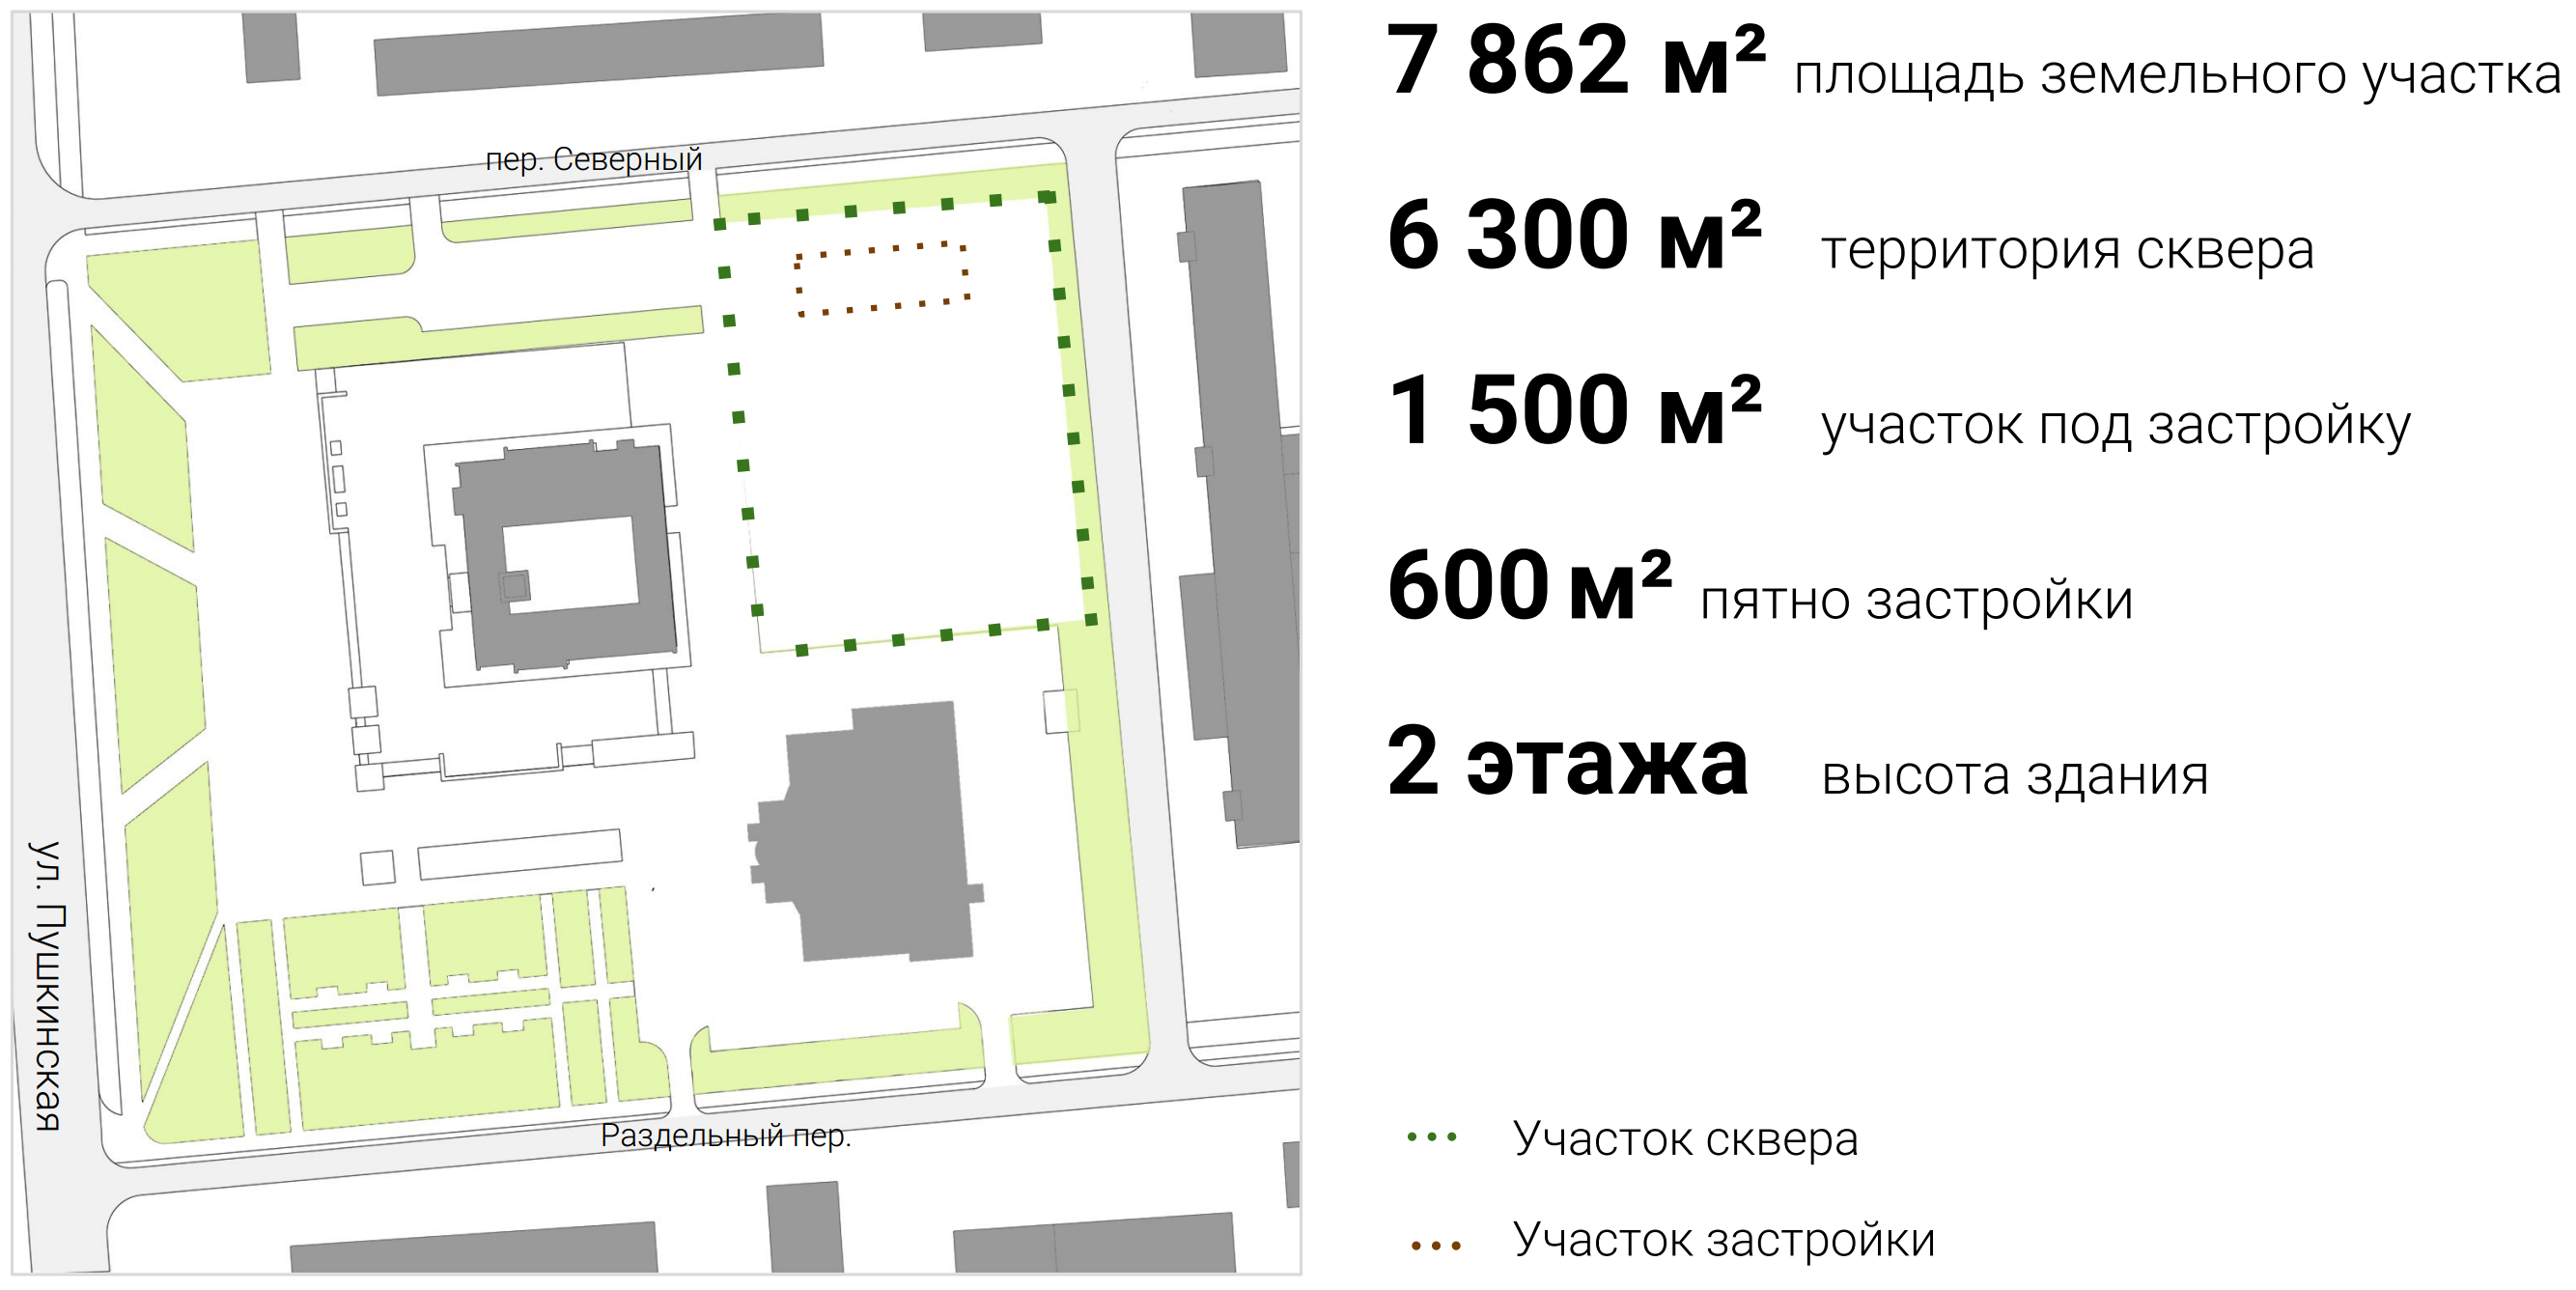 Сквер будет расположен между Администраций Ижевска, переулком Северный, Ростелекомом и Верховным судом